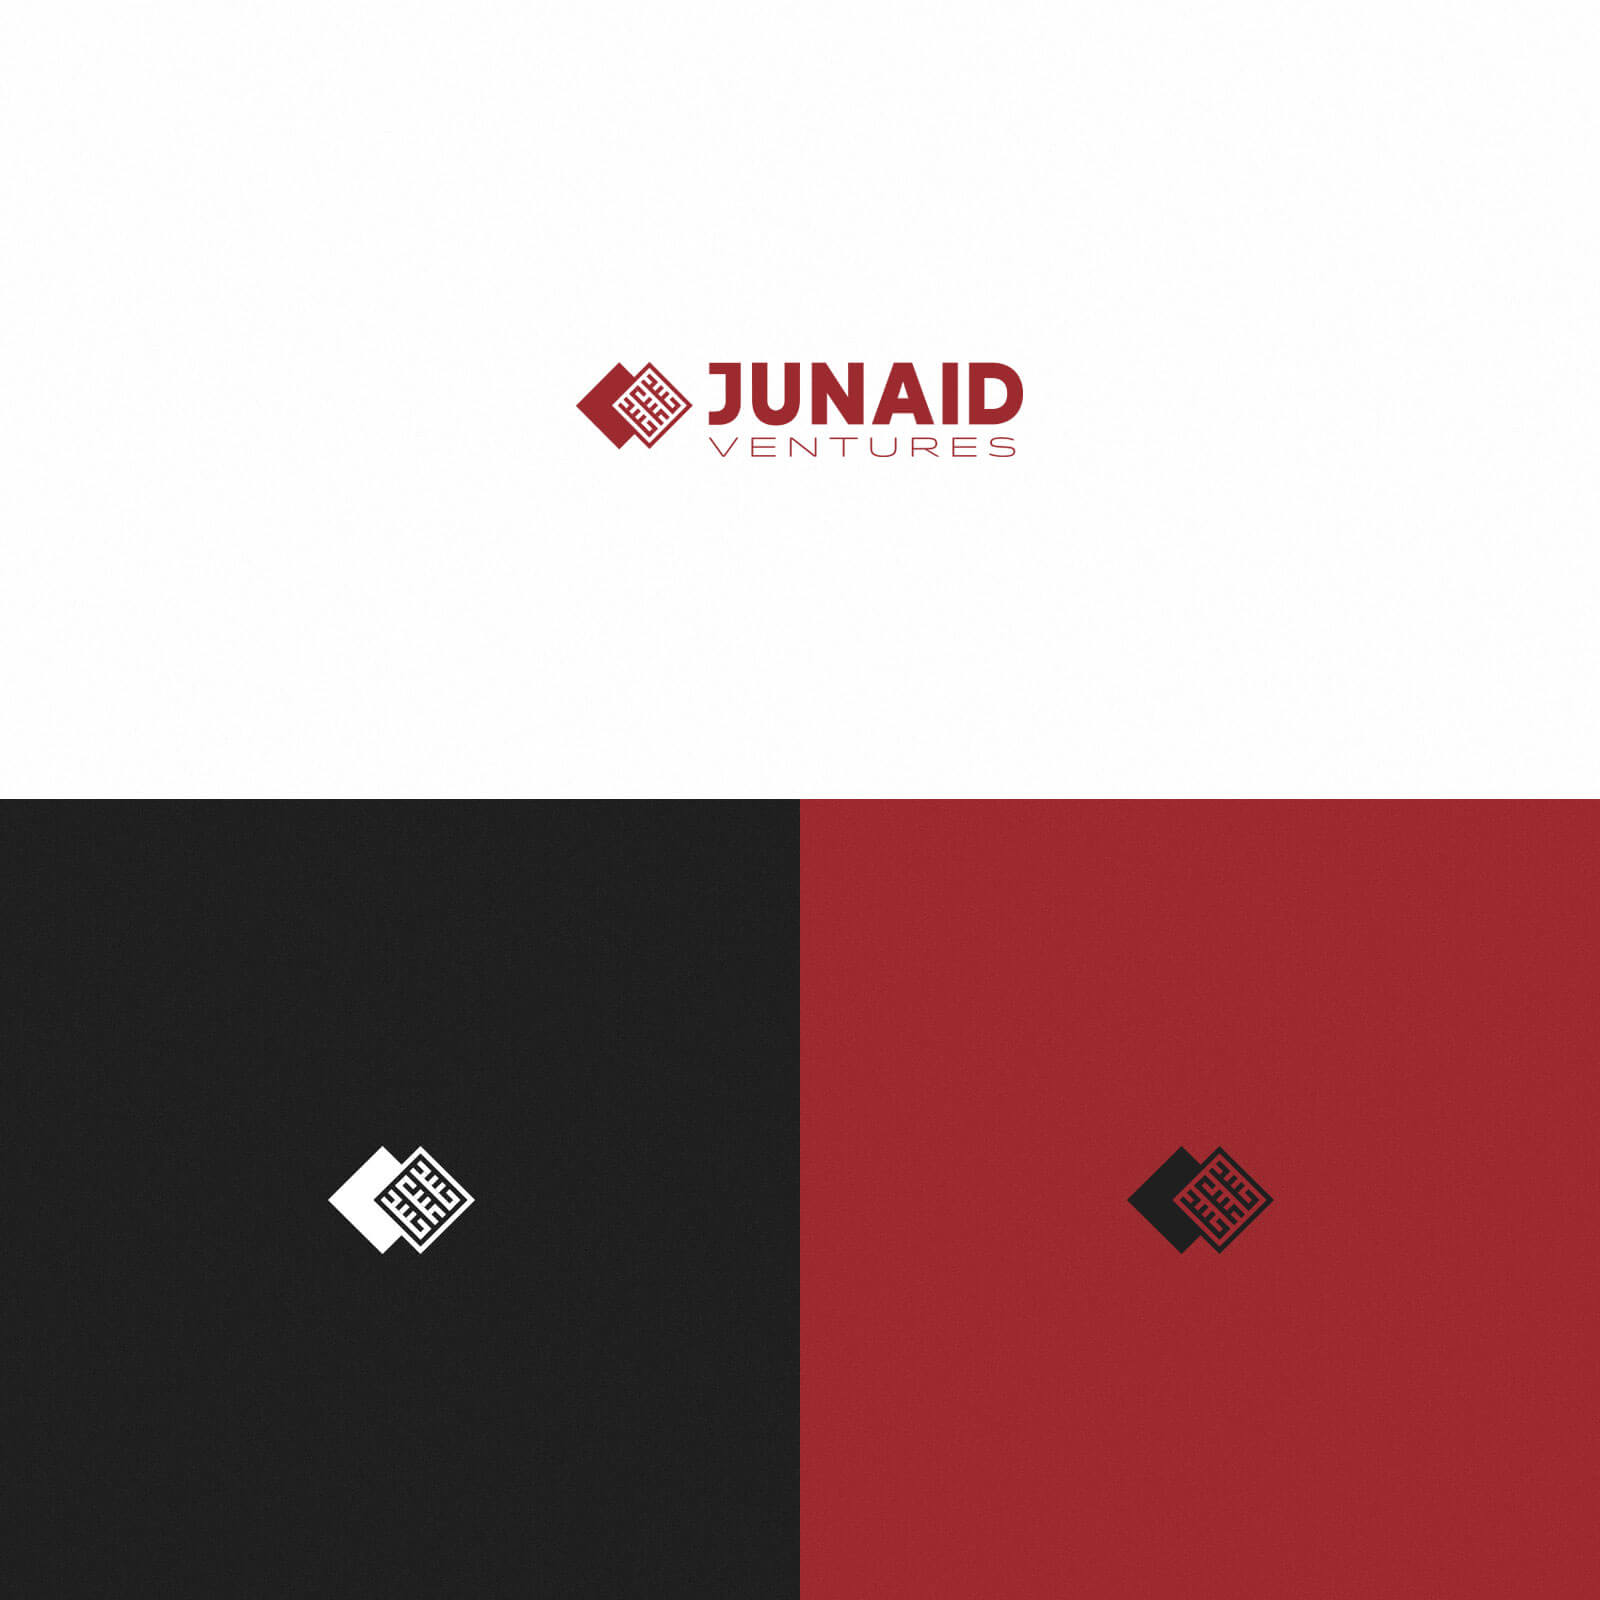 Junaid Ventures – Logo, Various Colors